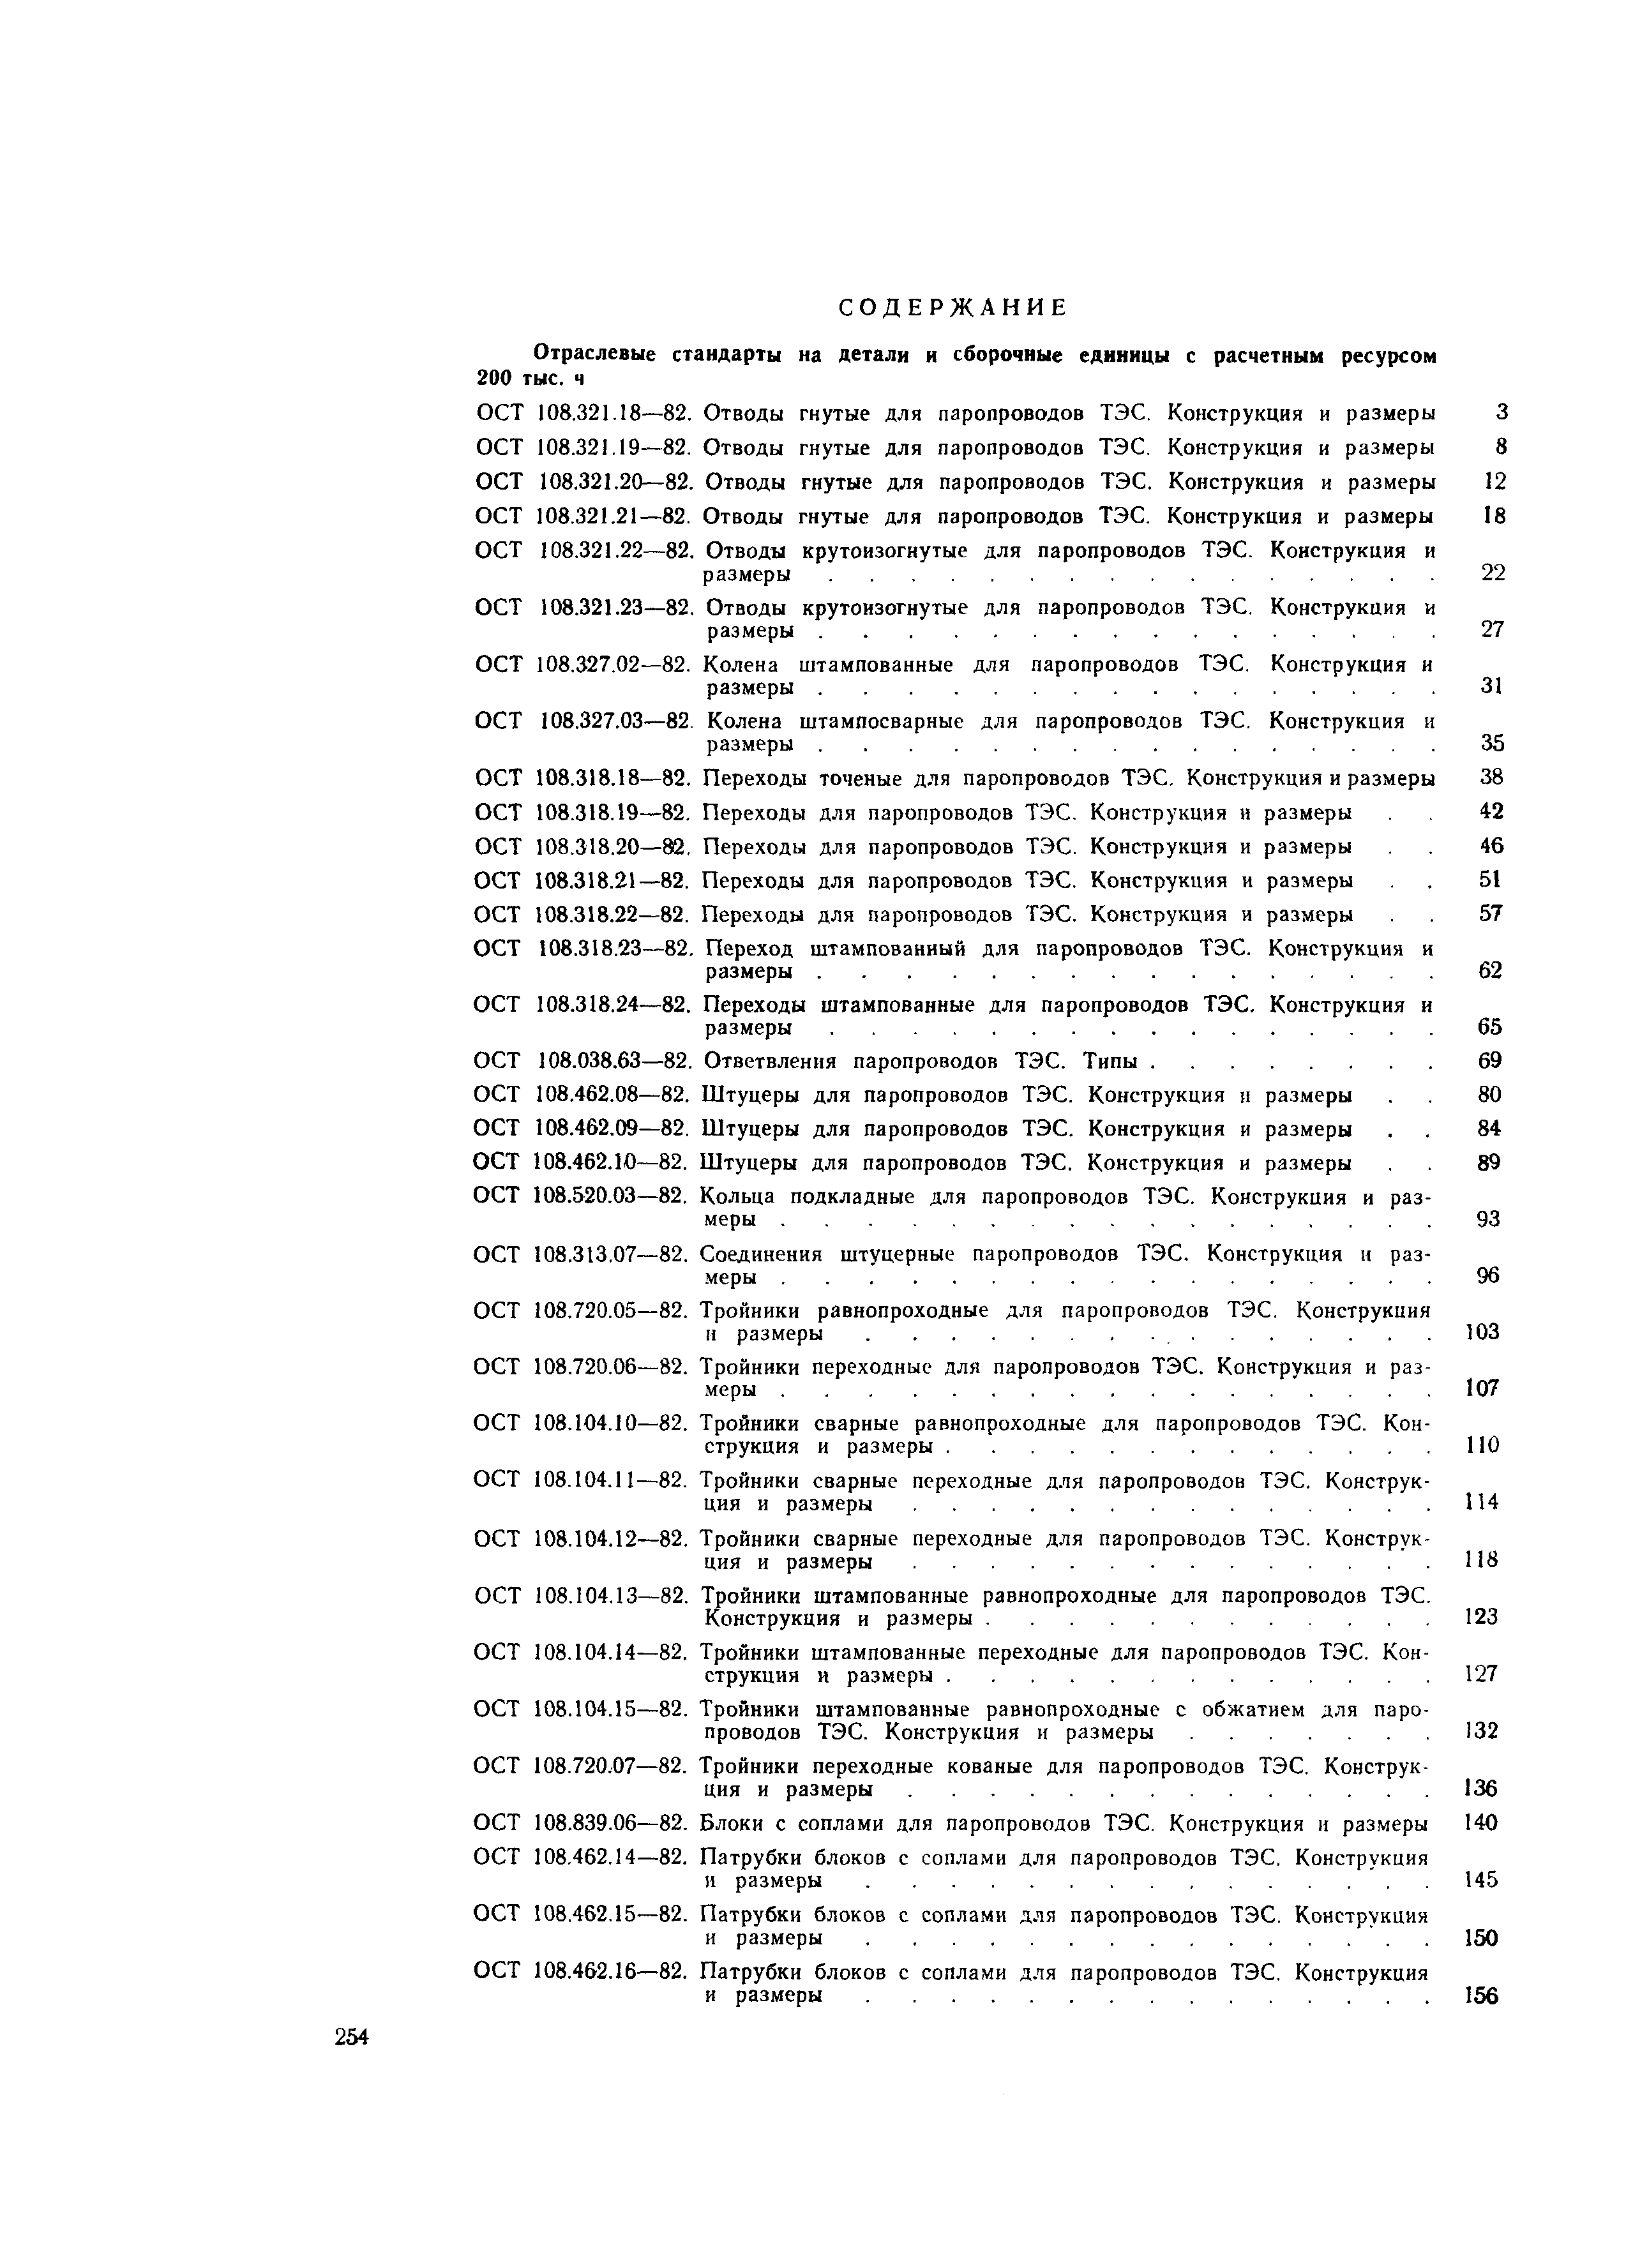 ОСТ 108.104.18-82